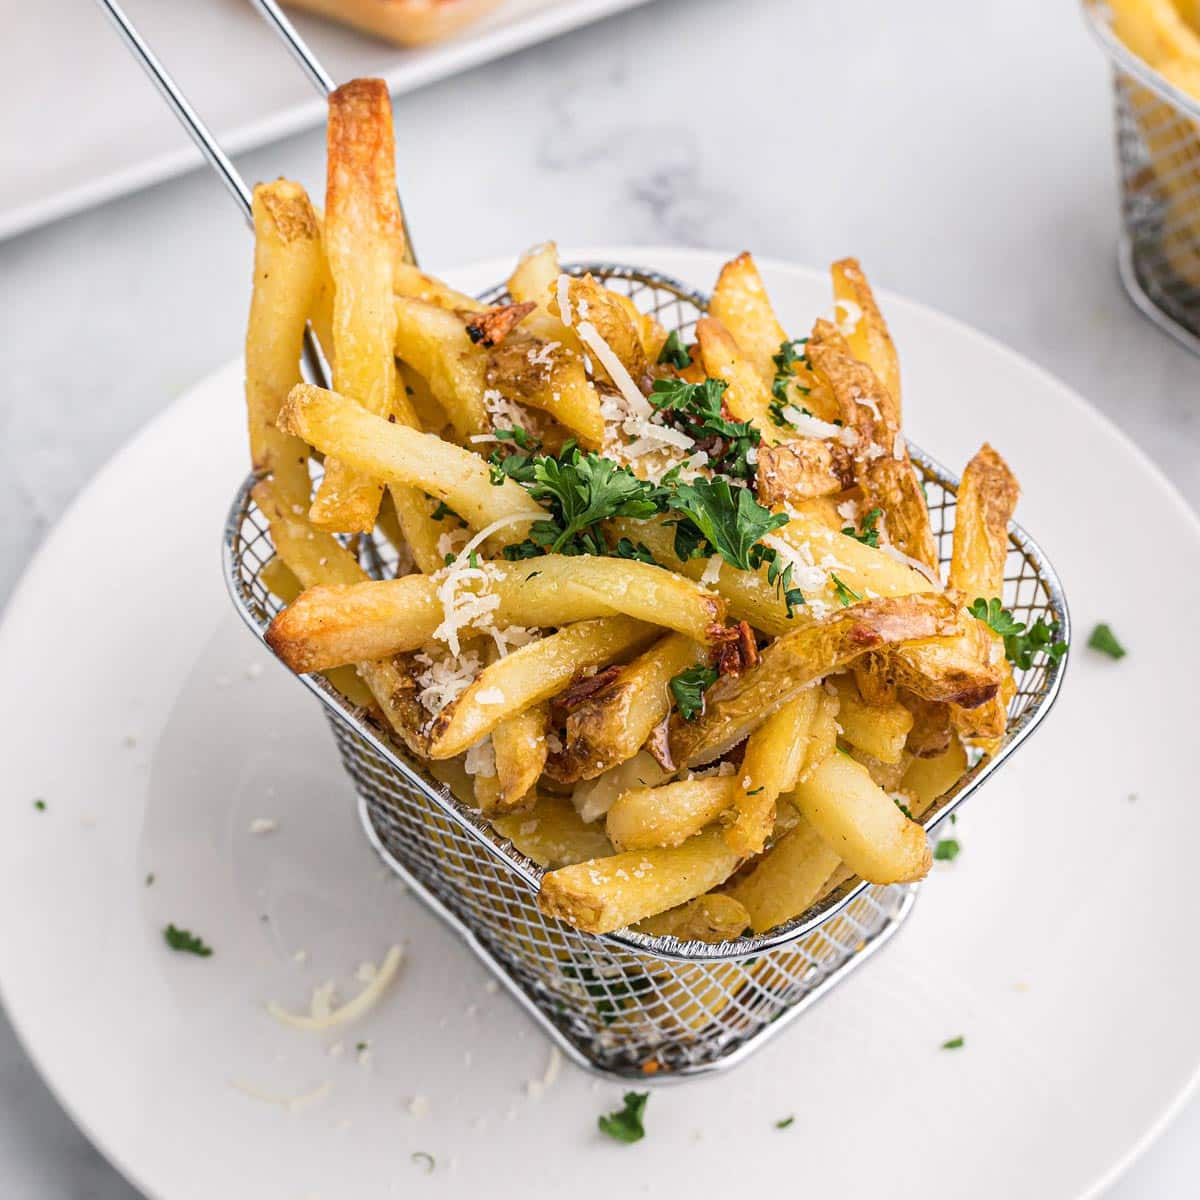 a basket of garlic fries.